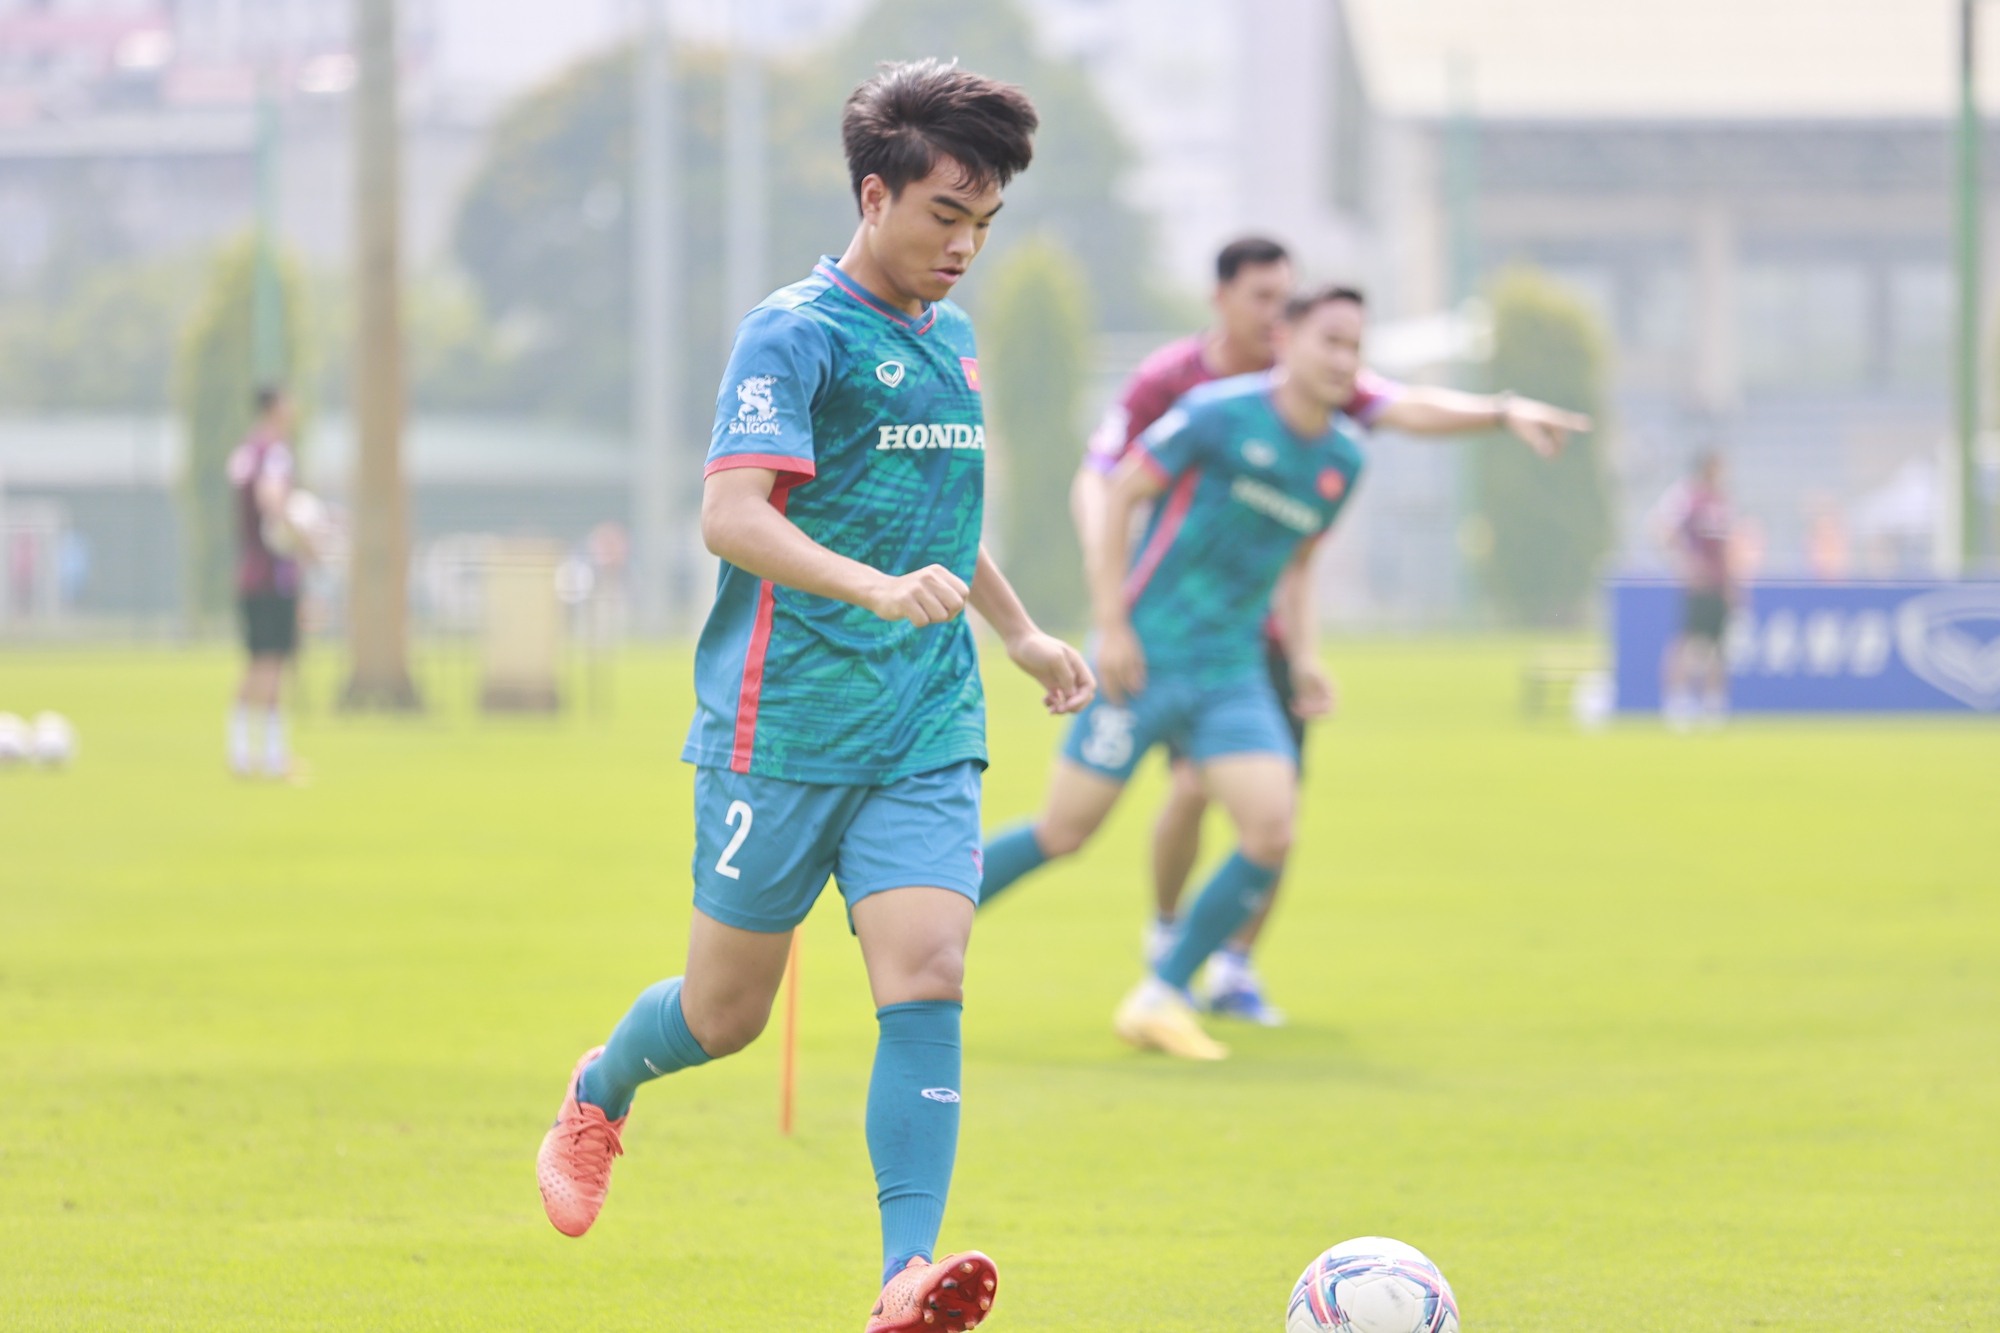 Ngắn nhìn vẻ điển trai của tiền đạo chơi bóng ở Hàn Quốc của U23 Việt Nam - Ảnh 7.